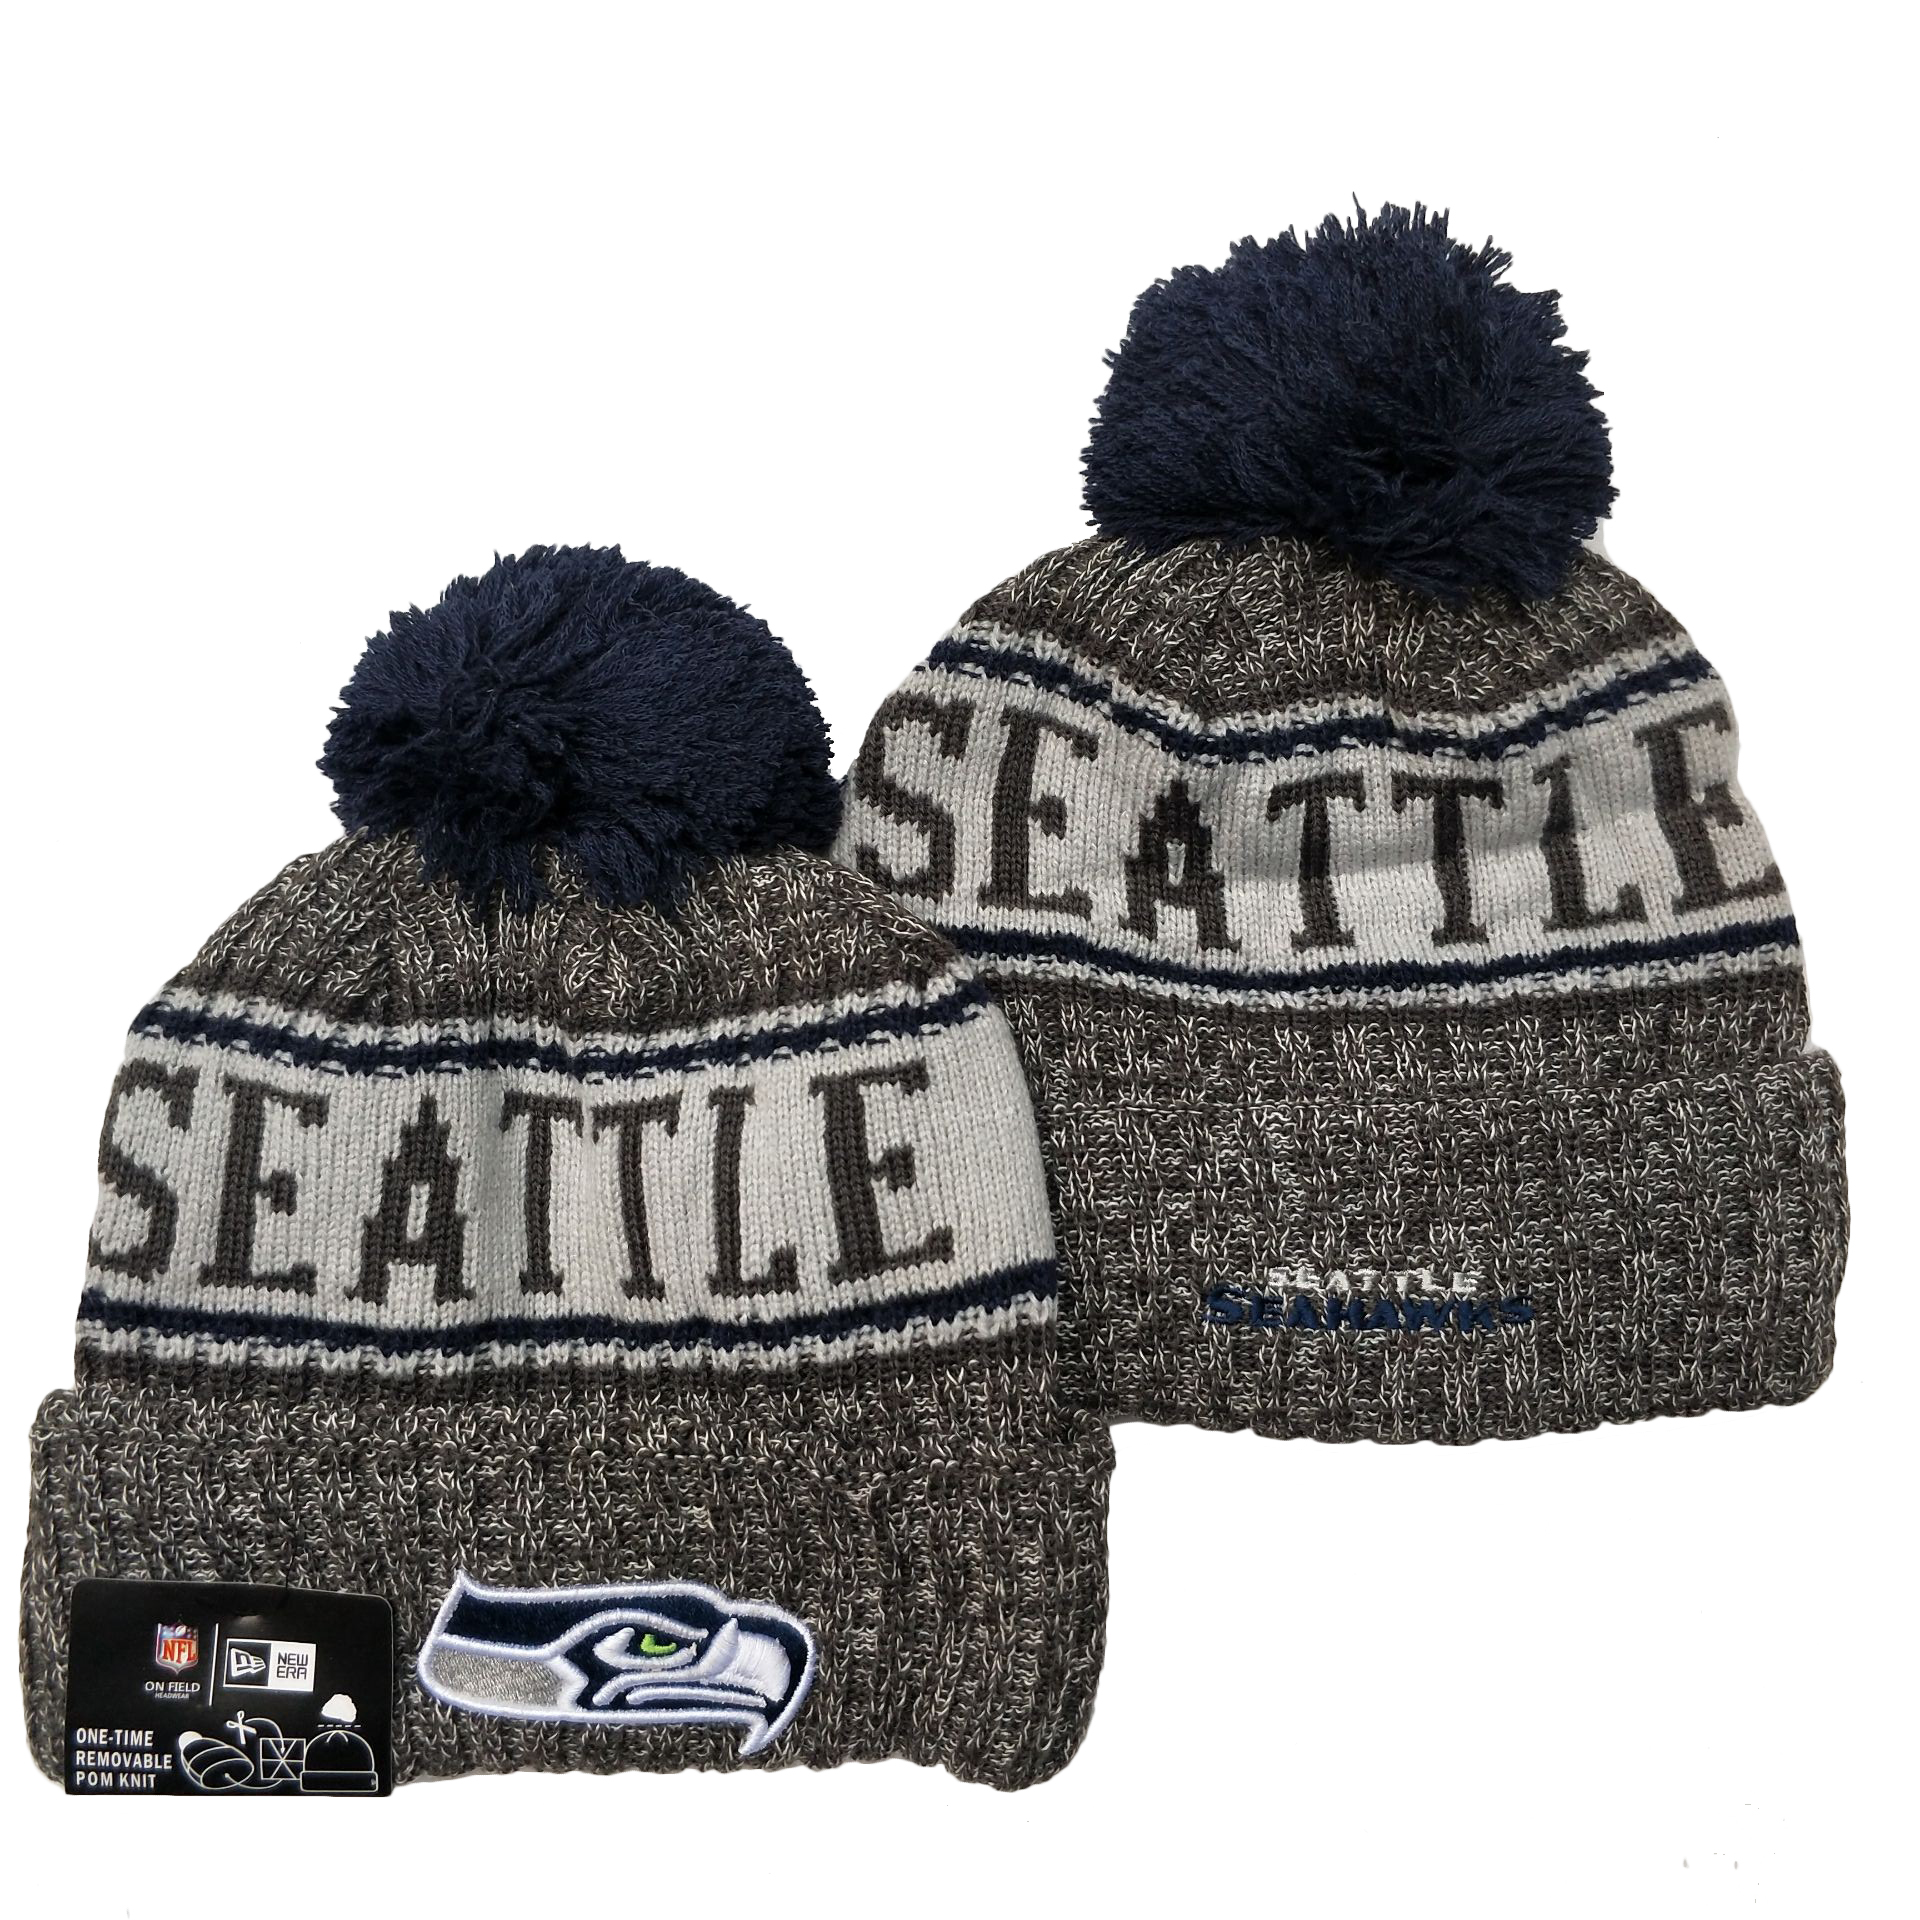 Seattle Seahawks Knit Hats 089